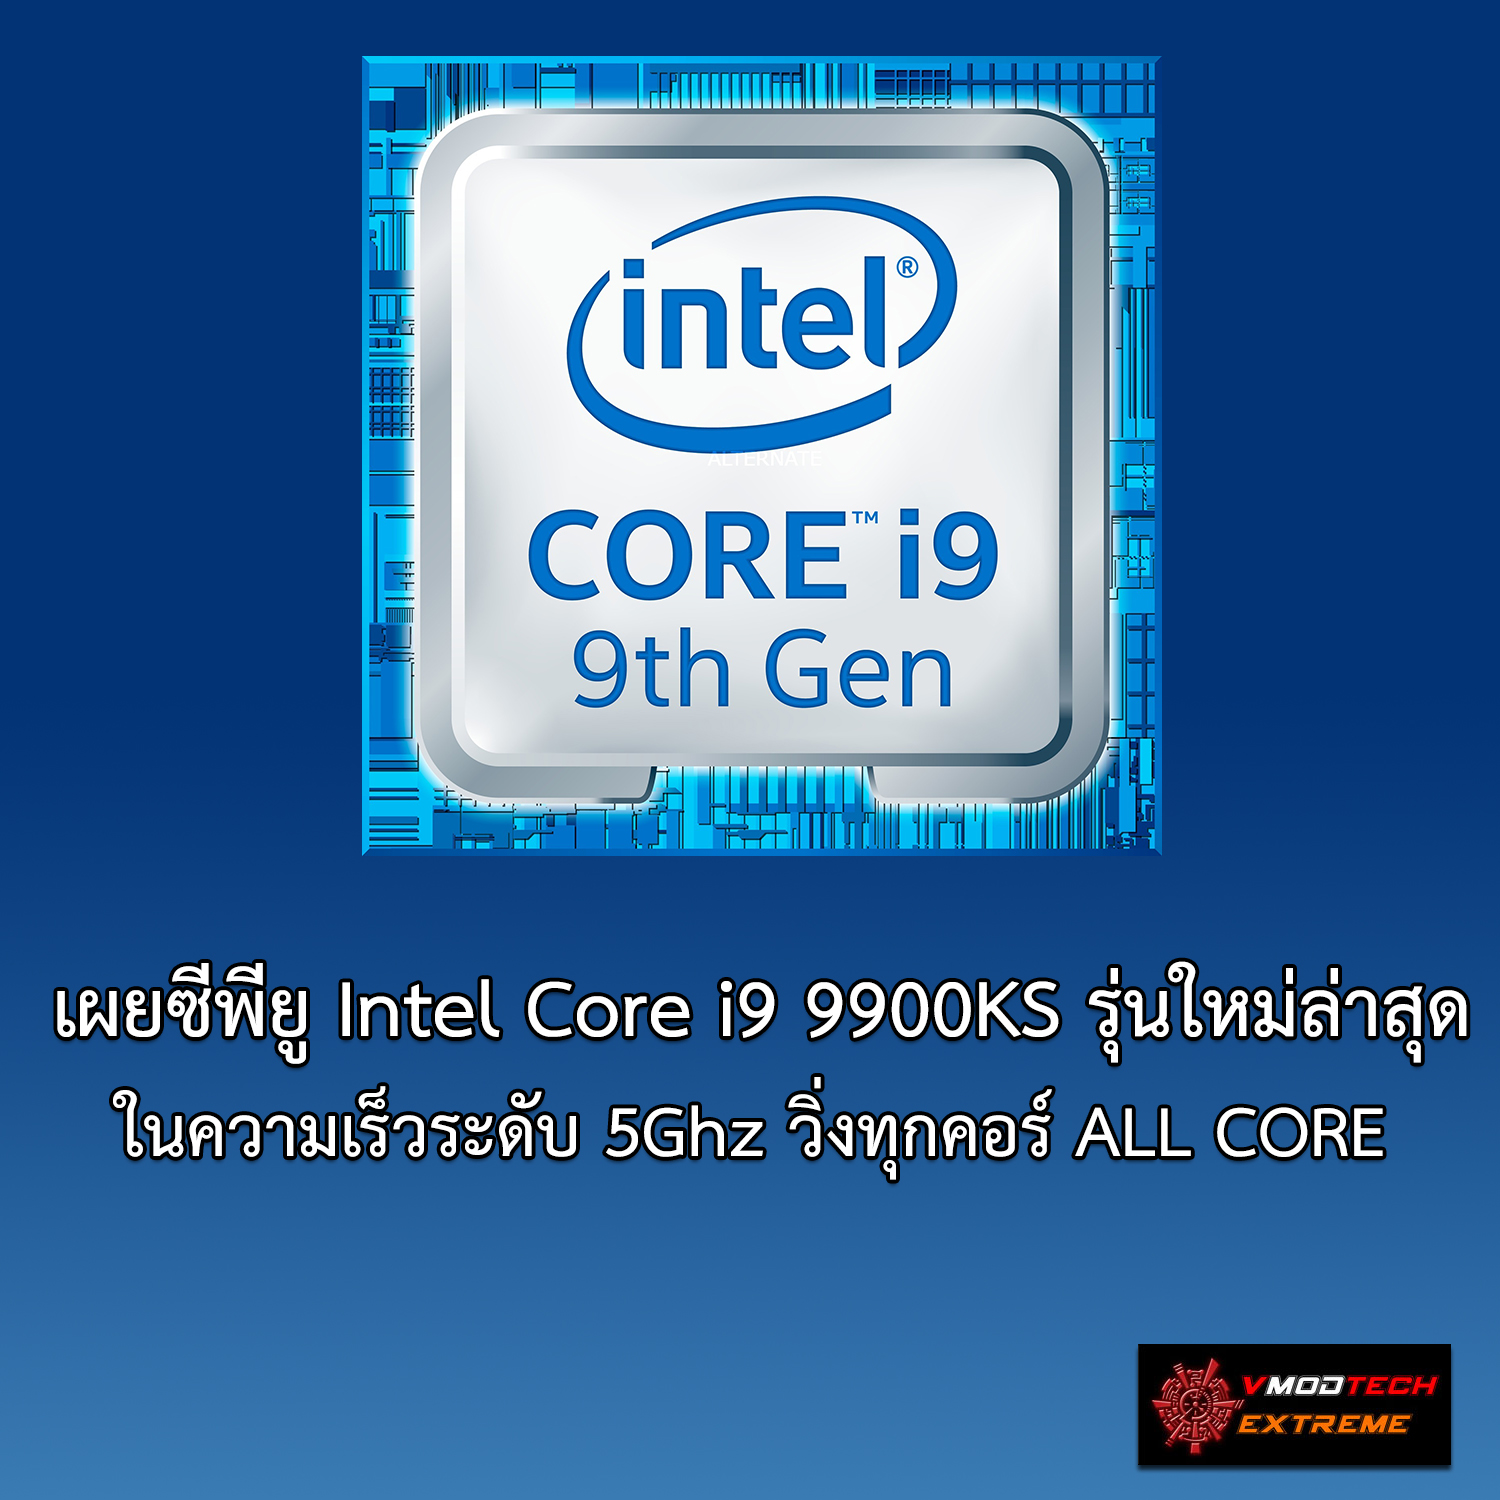 มาใหม่? ซีพียู Intel Core i9 9900KS รุ่นใหม่ล่าสุดในความเร็วระดับ 5Ghz วิ่งทุกคอร์ ALL CORE 